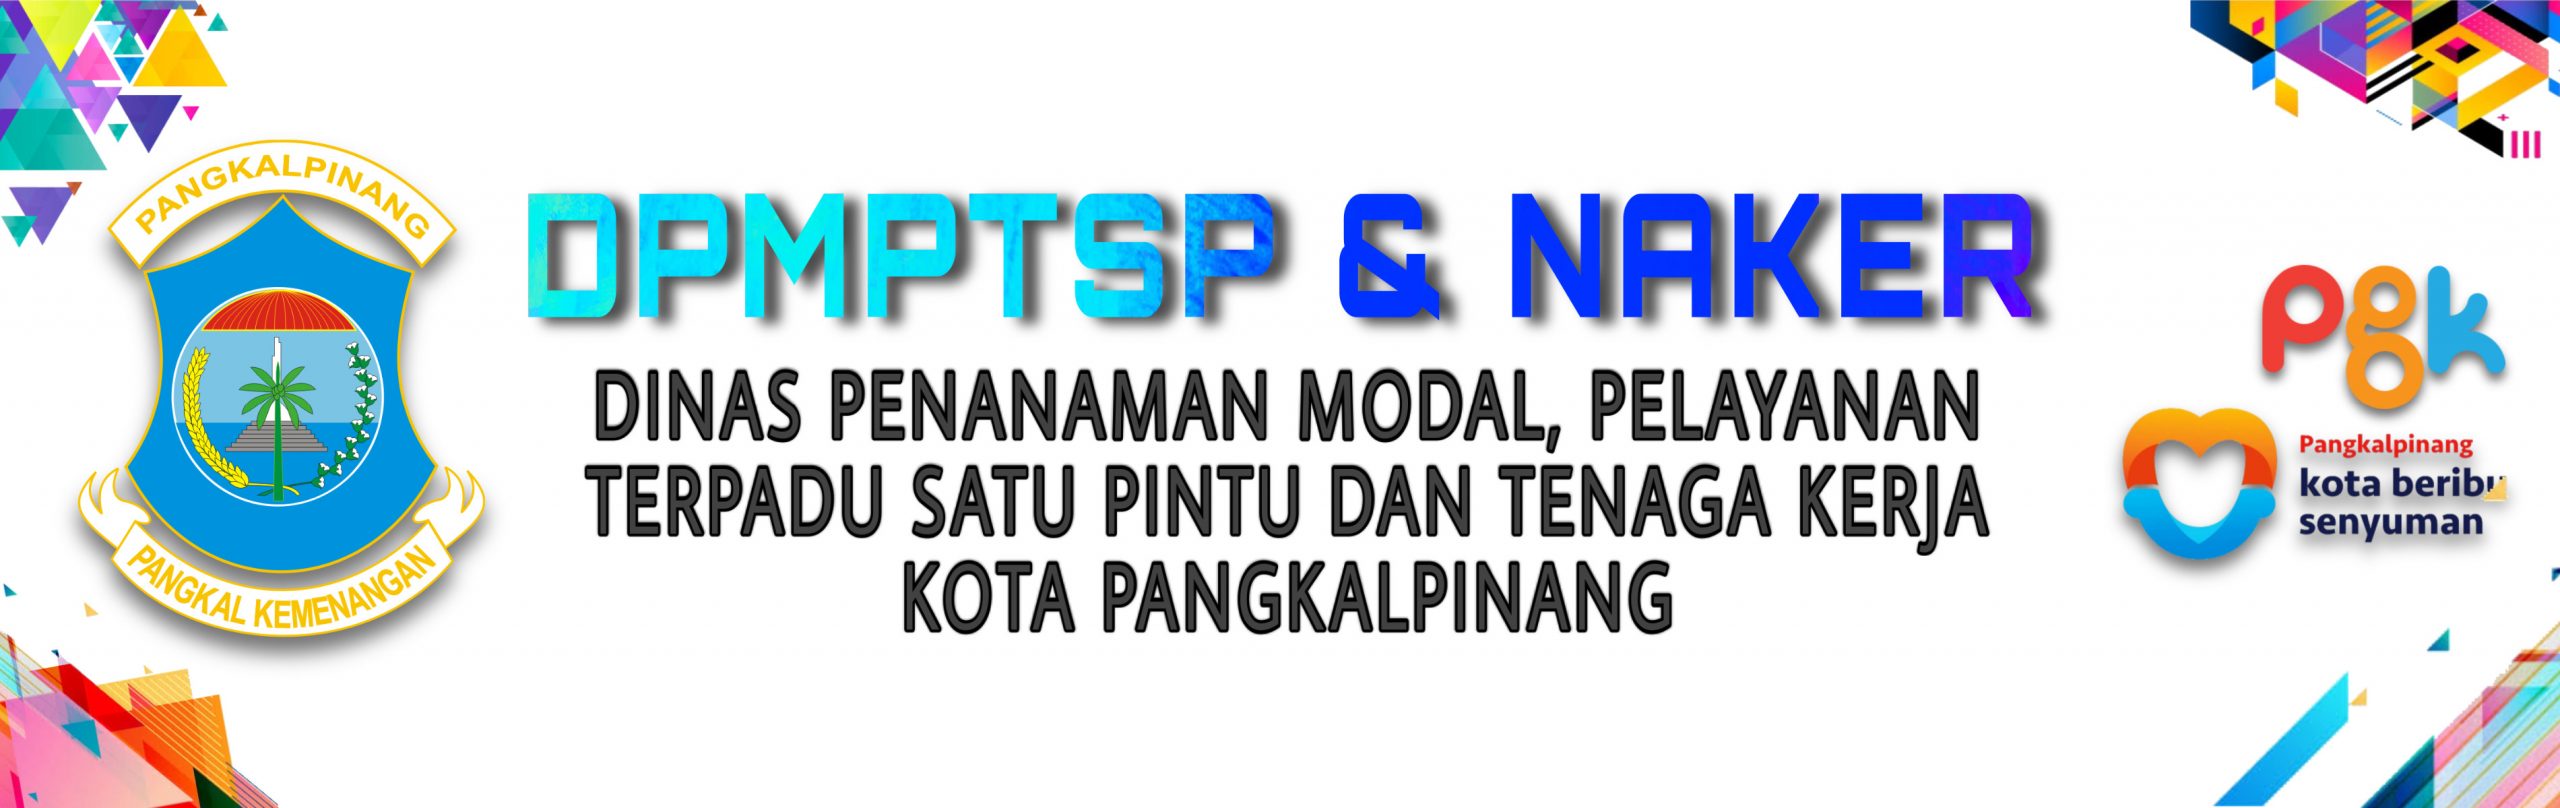 DPMPTSP&NAKER Kota Pangkalpinang